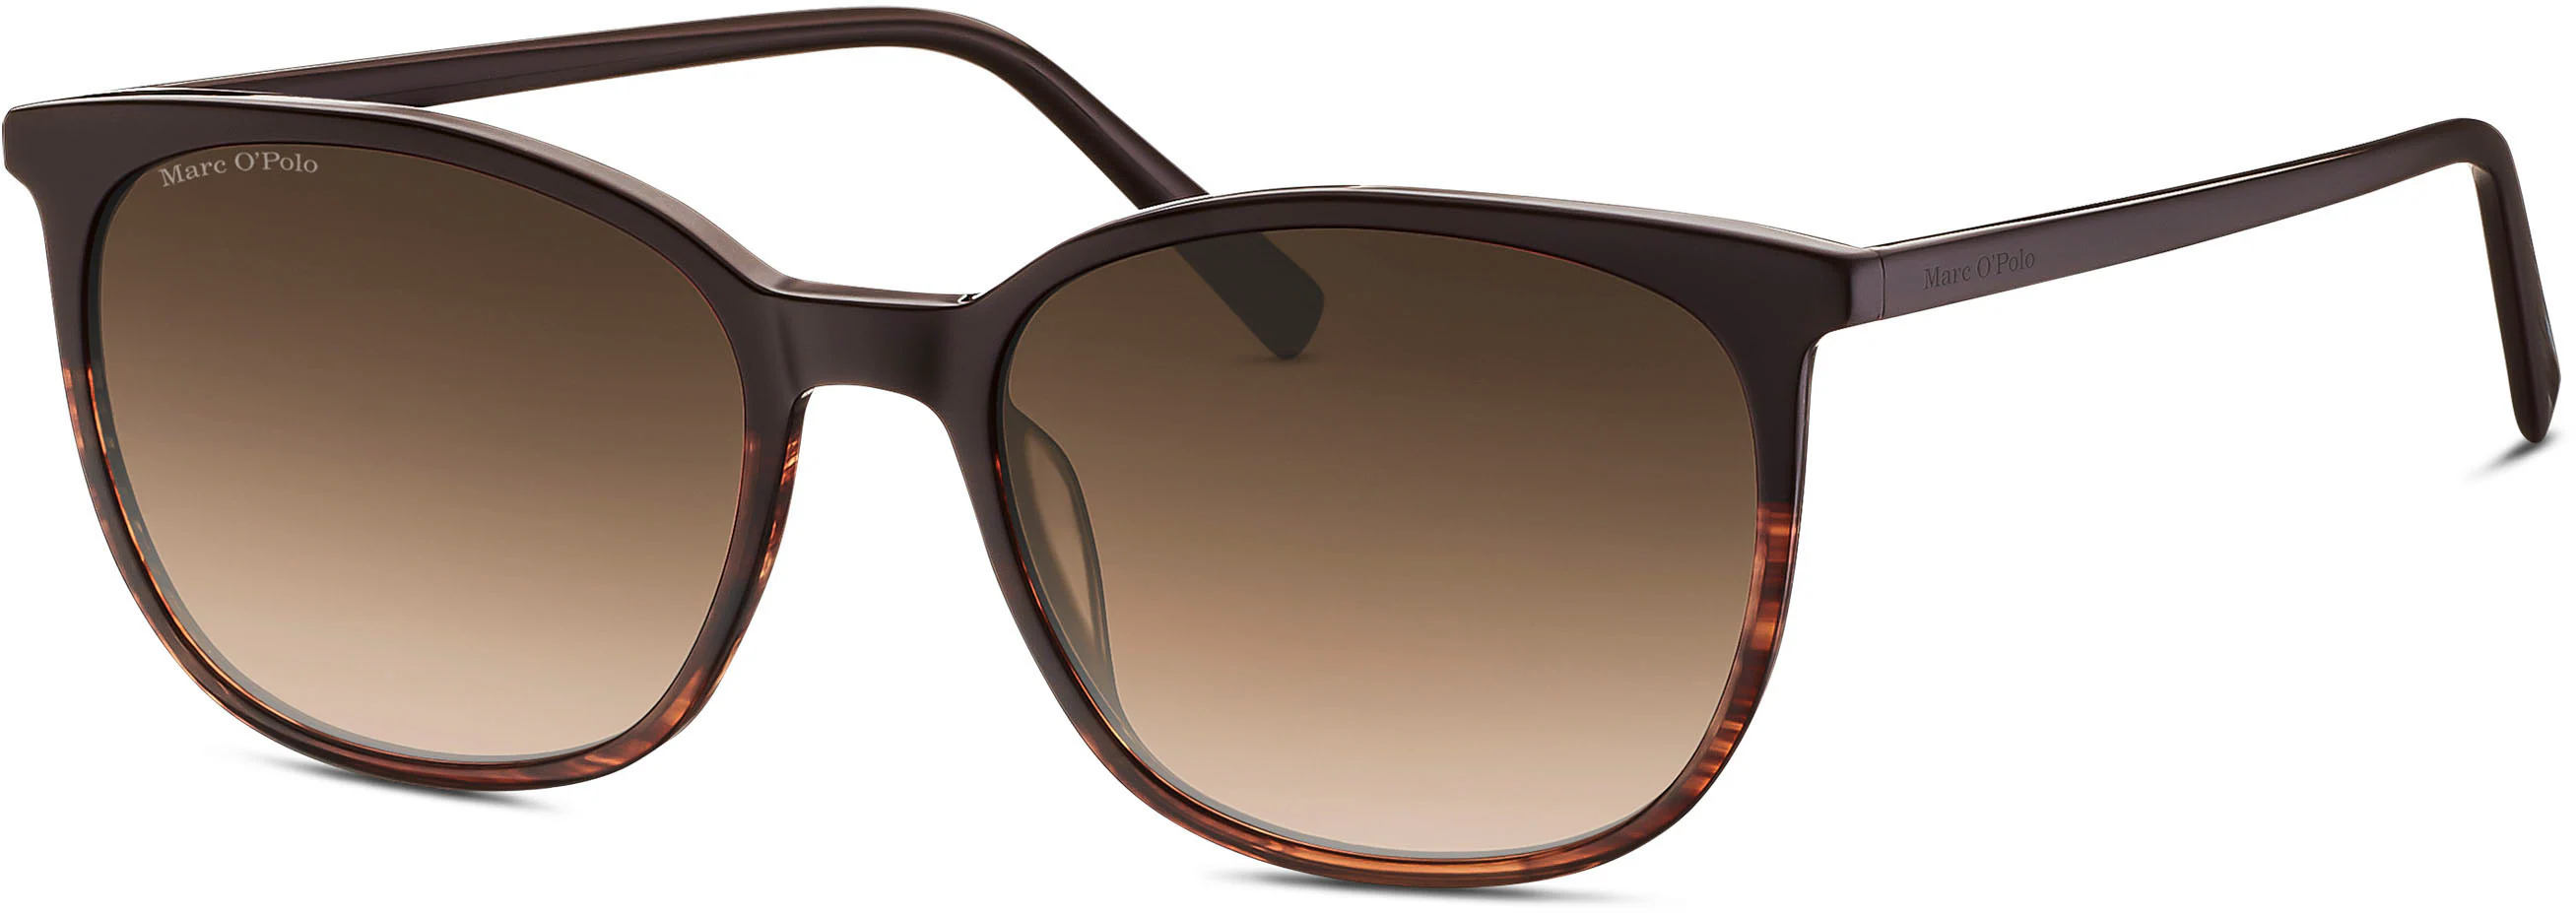 Marc OPolo Sonnenbrille "Modell 506188" günstig online kaufen